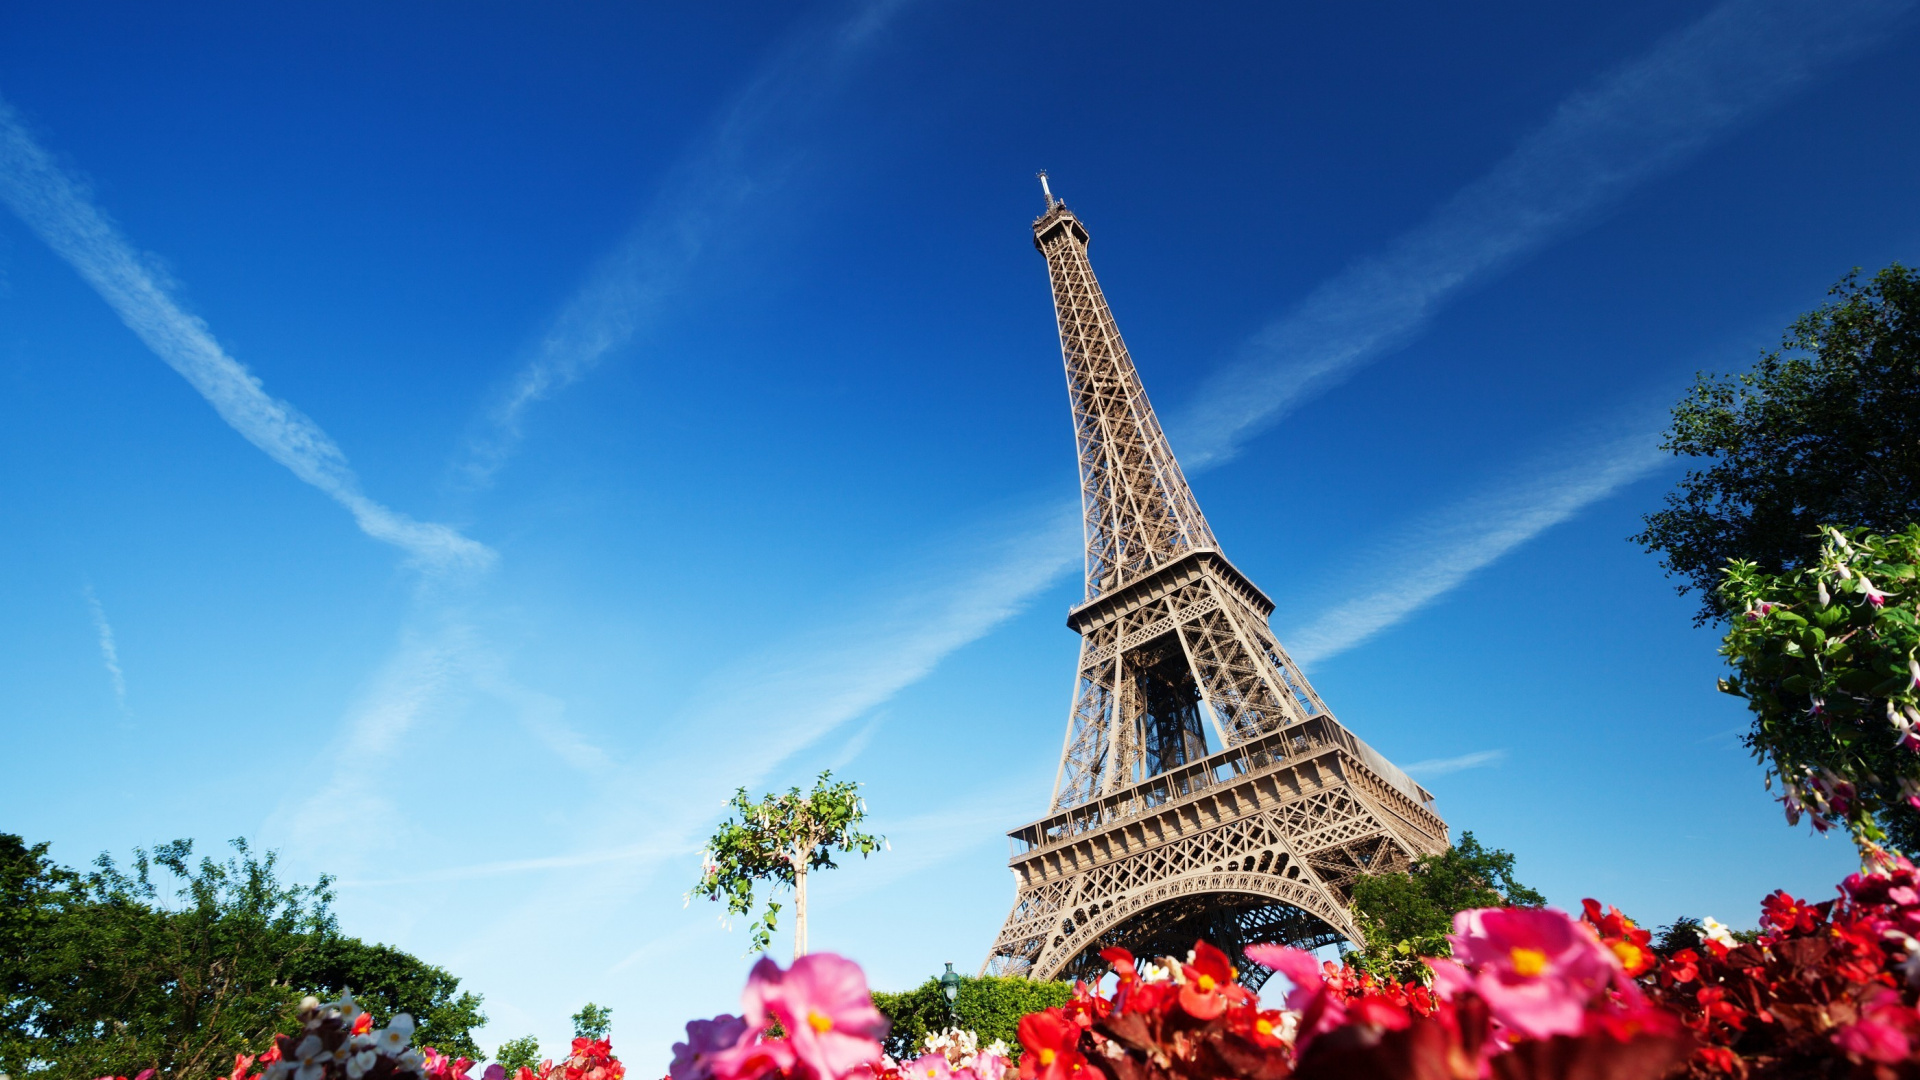 艾菲尔铁塔, 里程碑, 巴黎的埃菲尔铁塔, 天空, 旅游业 壁纸 1920x1080 允许